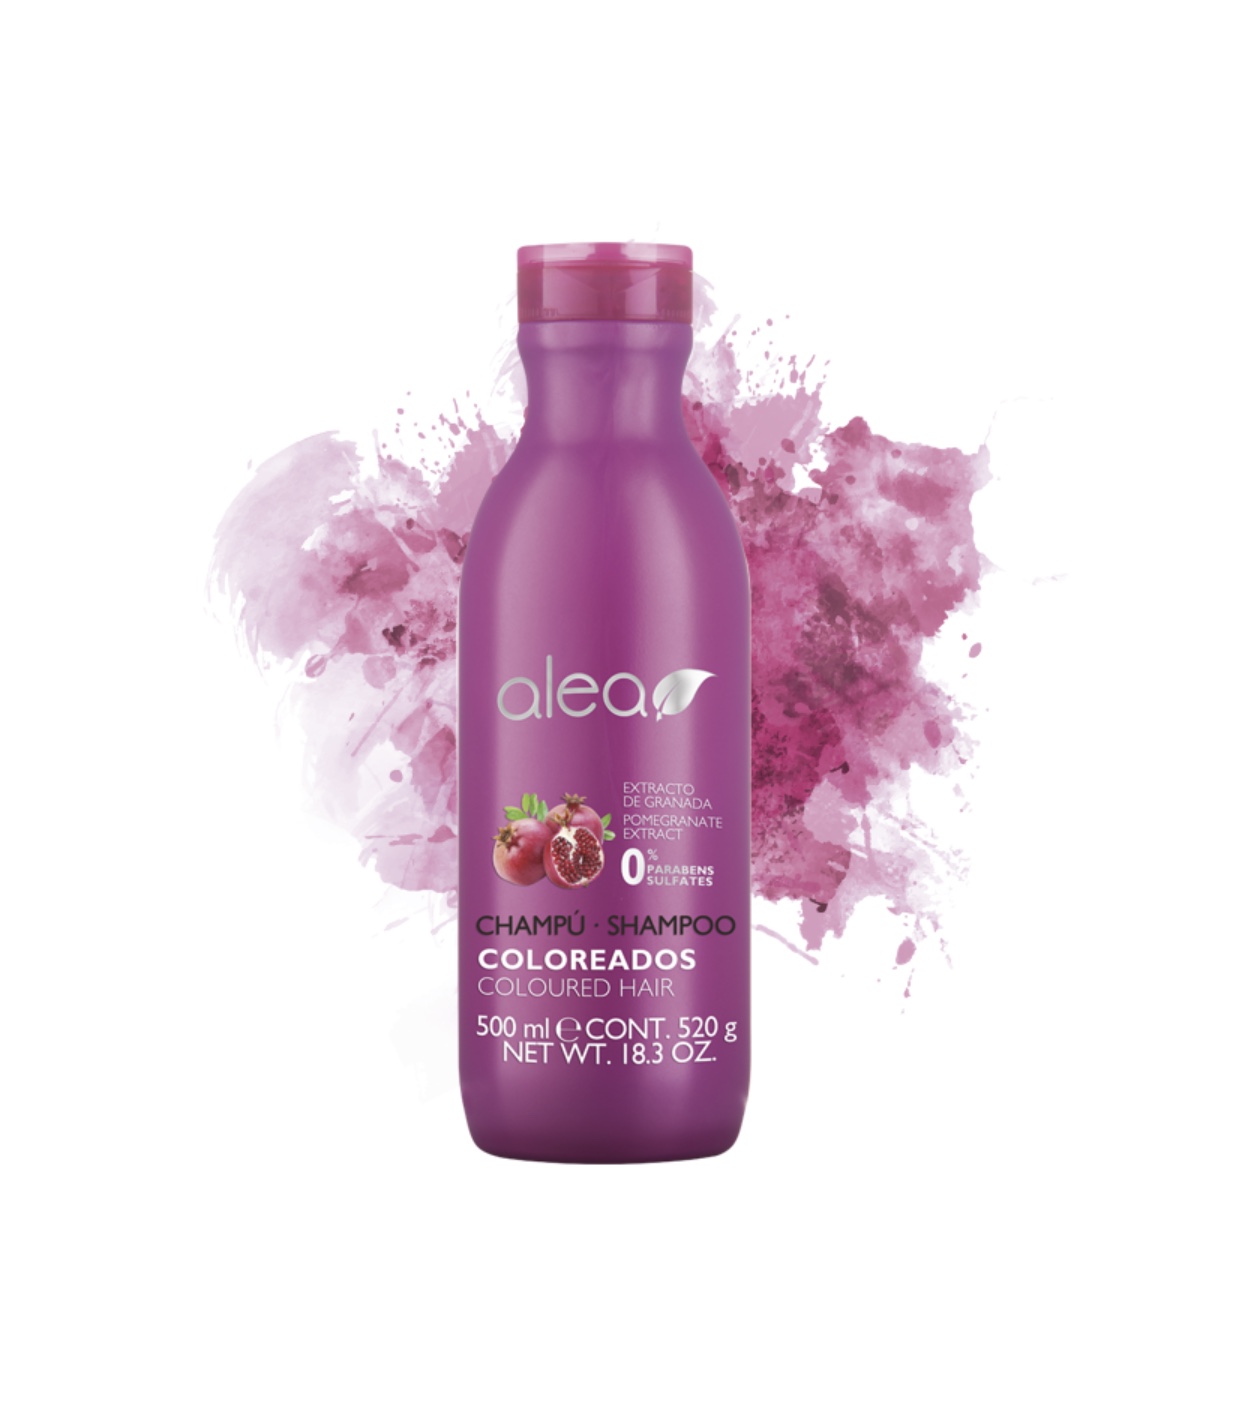 Colored hair shampoo. Шампунь hair Pro extract. Soft Shampoo Peart extract шампунь. Шампунь Клер в розовой упаковке. Bendida косметика.